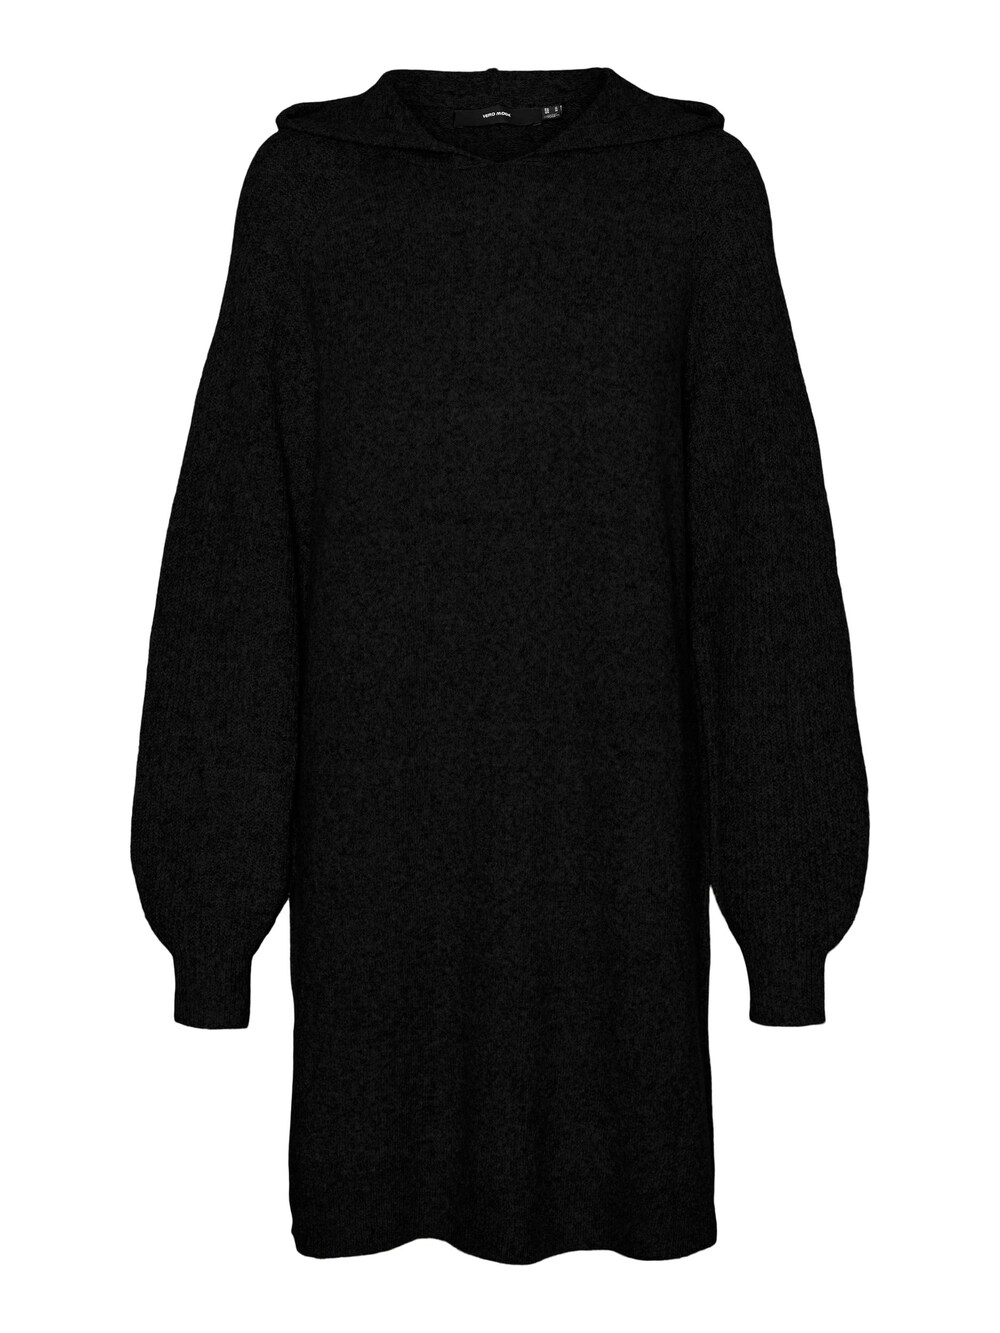 Вязанное платье Vero Moda Doffy, черный вязанное платье vero moda phillis черный